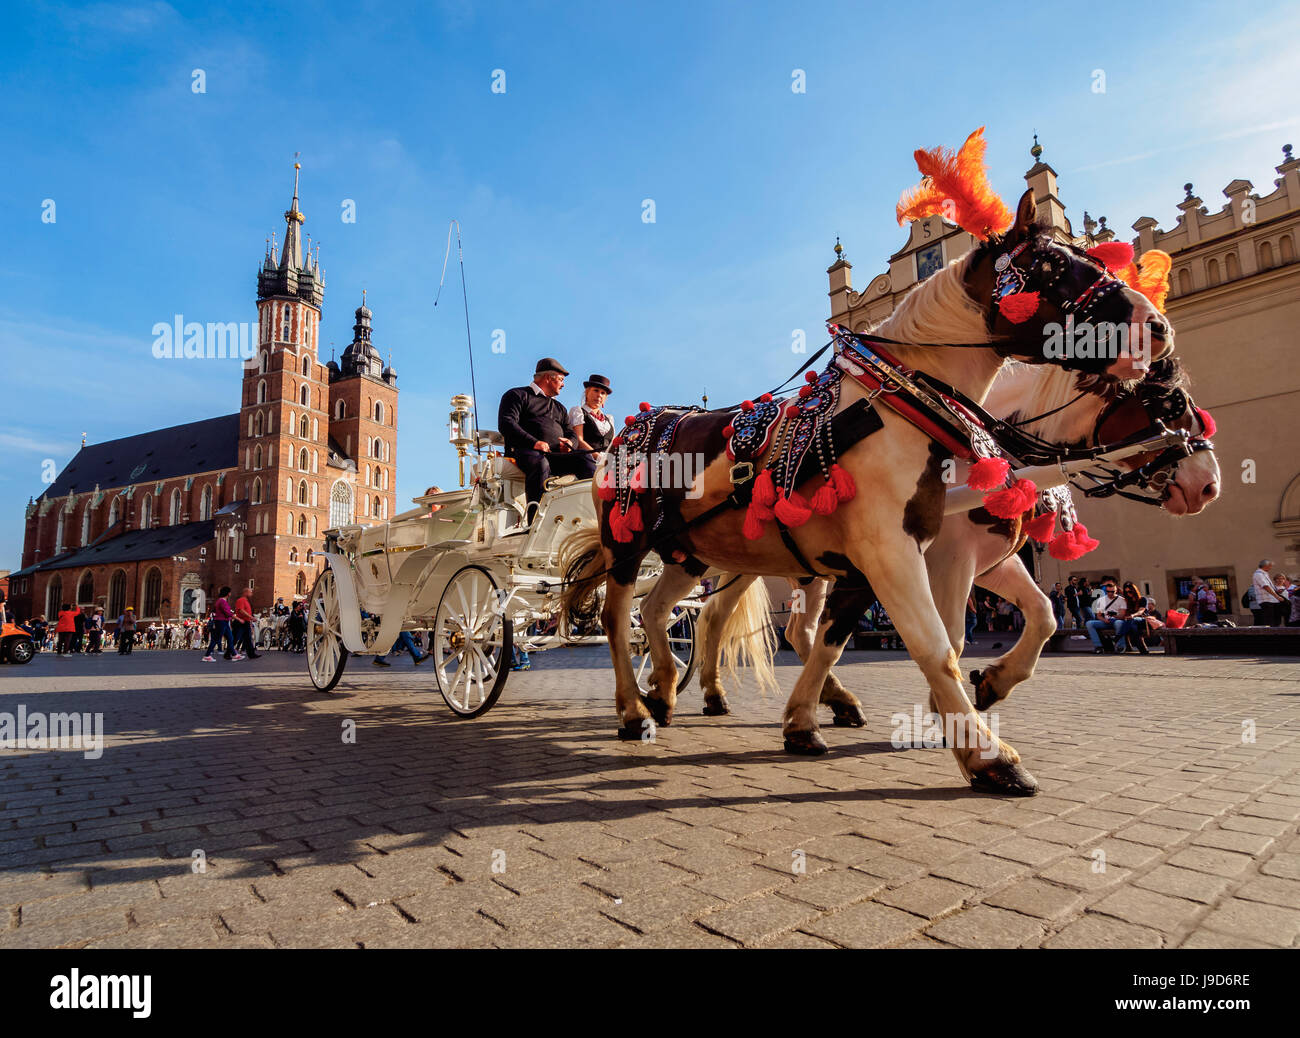 Pferdekutsche mit St. Mary Basilica im Hintergrund, Hauptmarkt, Krakau, weniger Polen Woiwodschaft, Polen, Europa Stockfoto